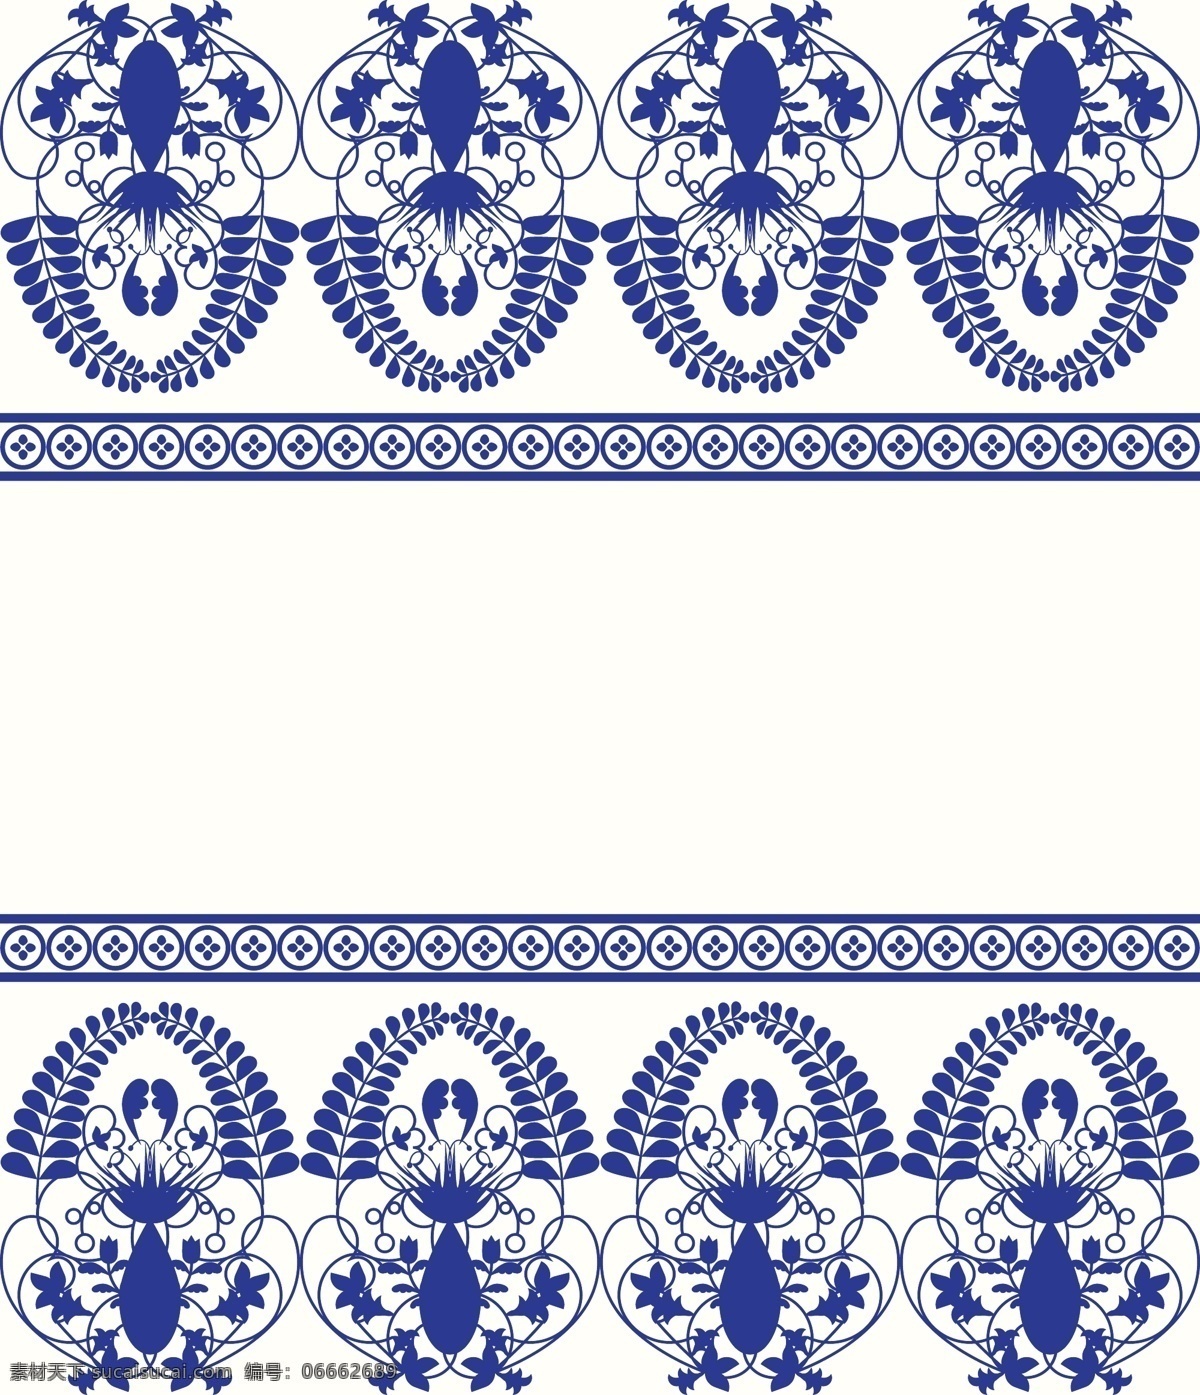 花样 蓝色 青花瓷 纹样 矢量 复古 简约 花纹 卡通 设计素材 对称 排列 平面素材 填充